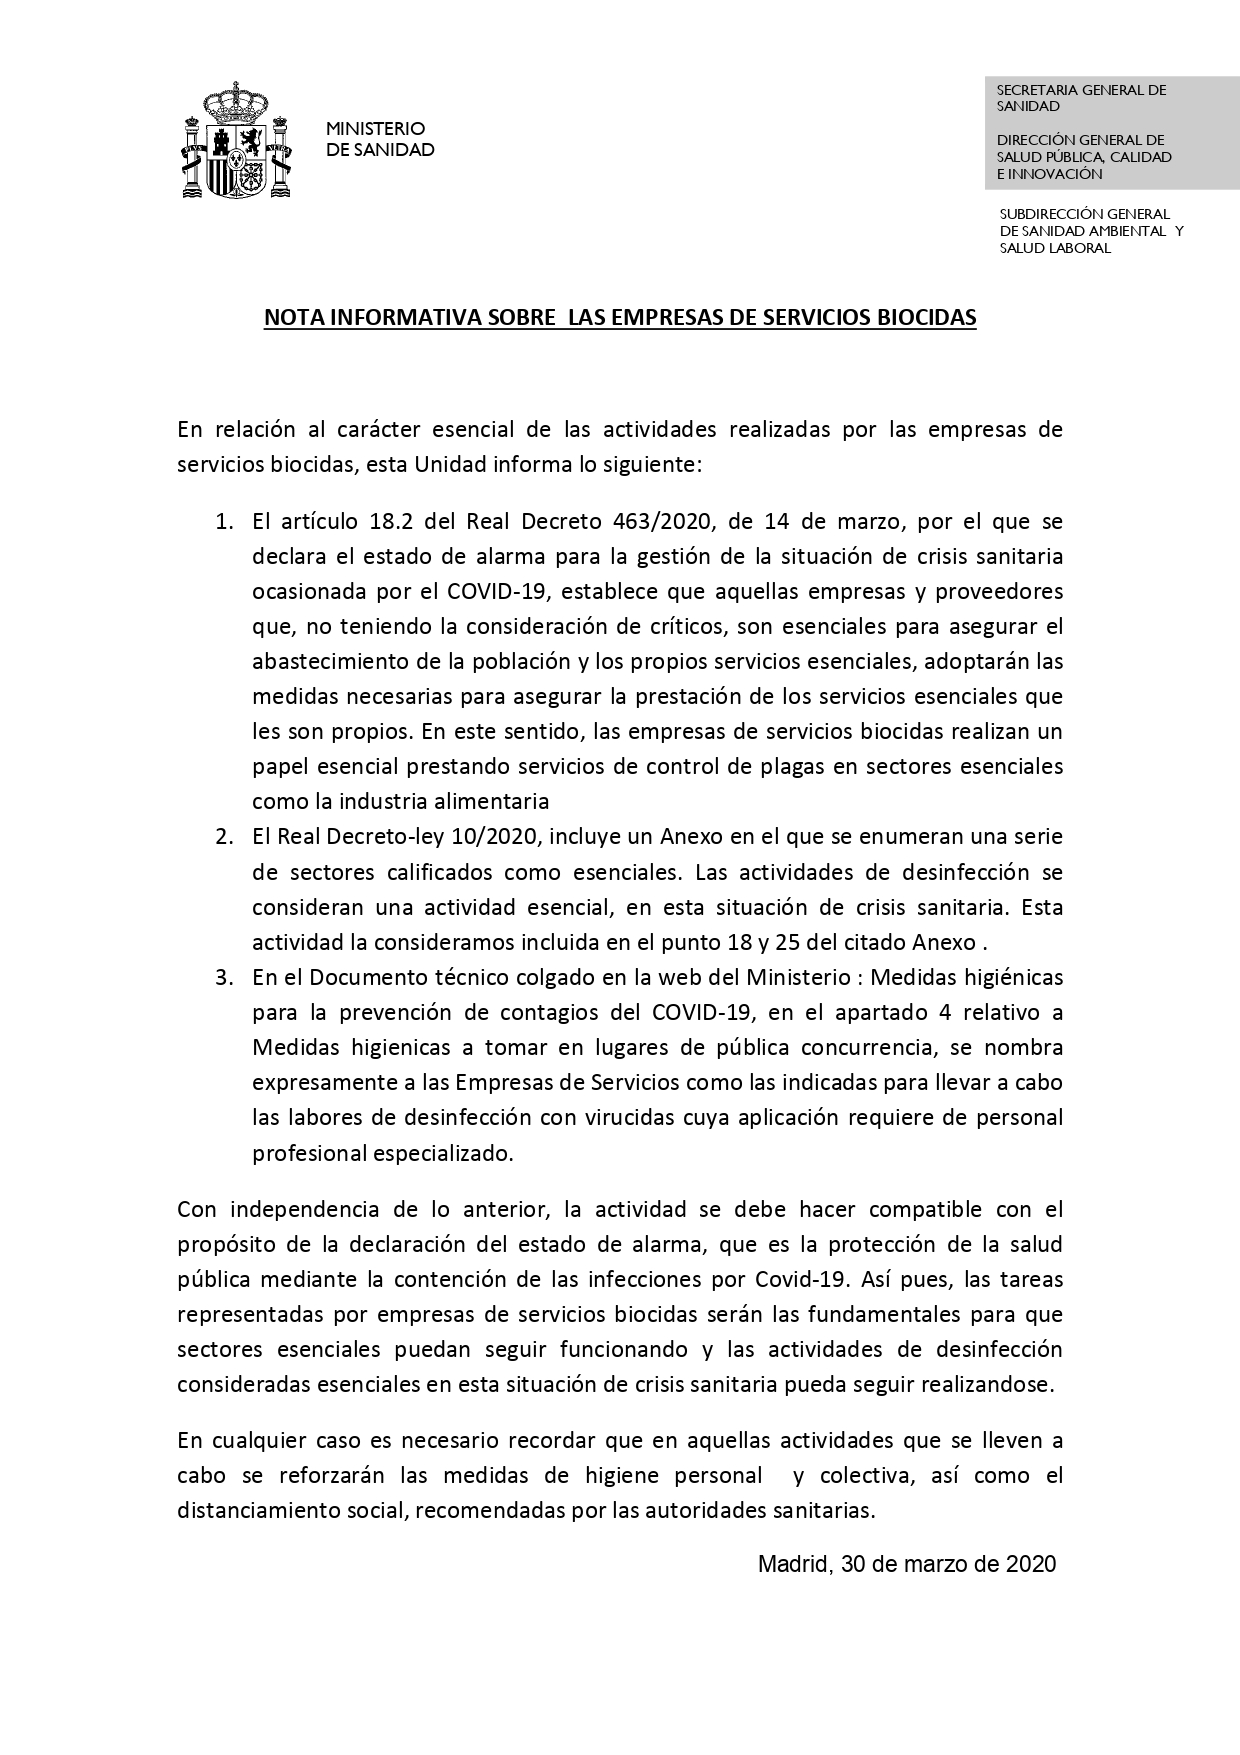 Nota_Empresas_de_Servicios_Biocidas (2)_page-0001